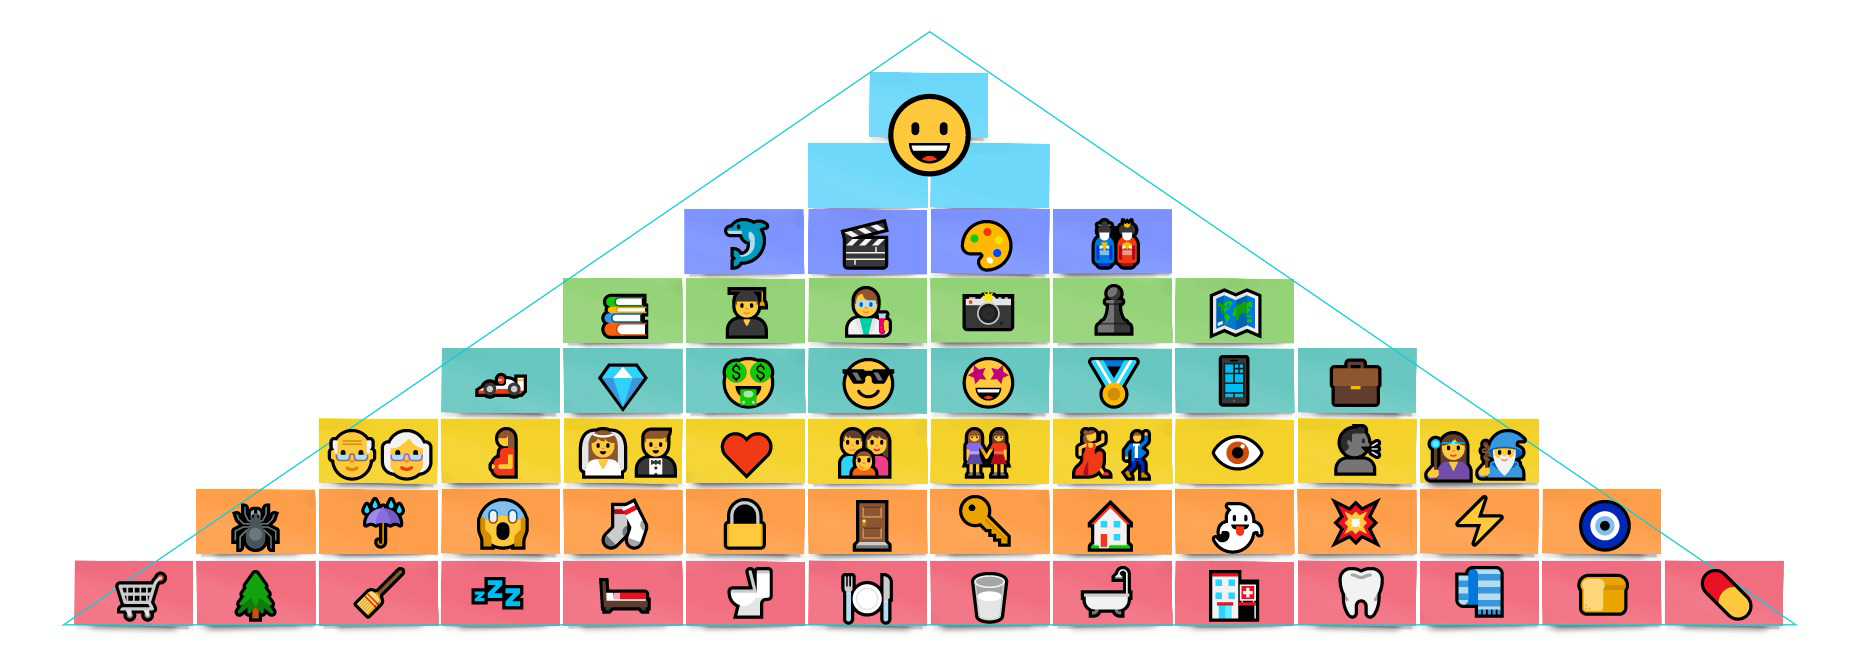 Потребности человека по пирамиде Маслоу: как использовать иерархию в жизни, маркетинге и менеджменте - SendPulse Blog